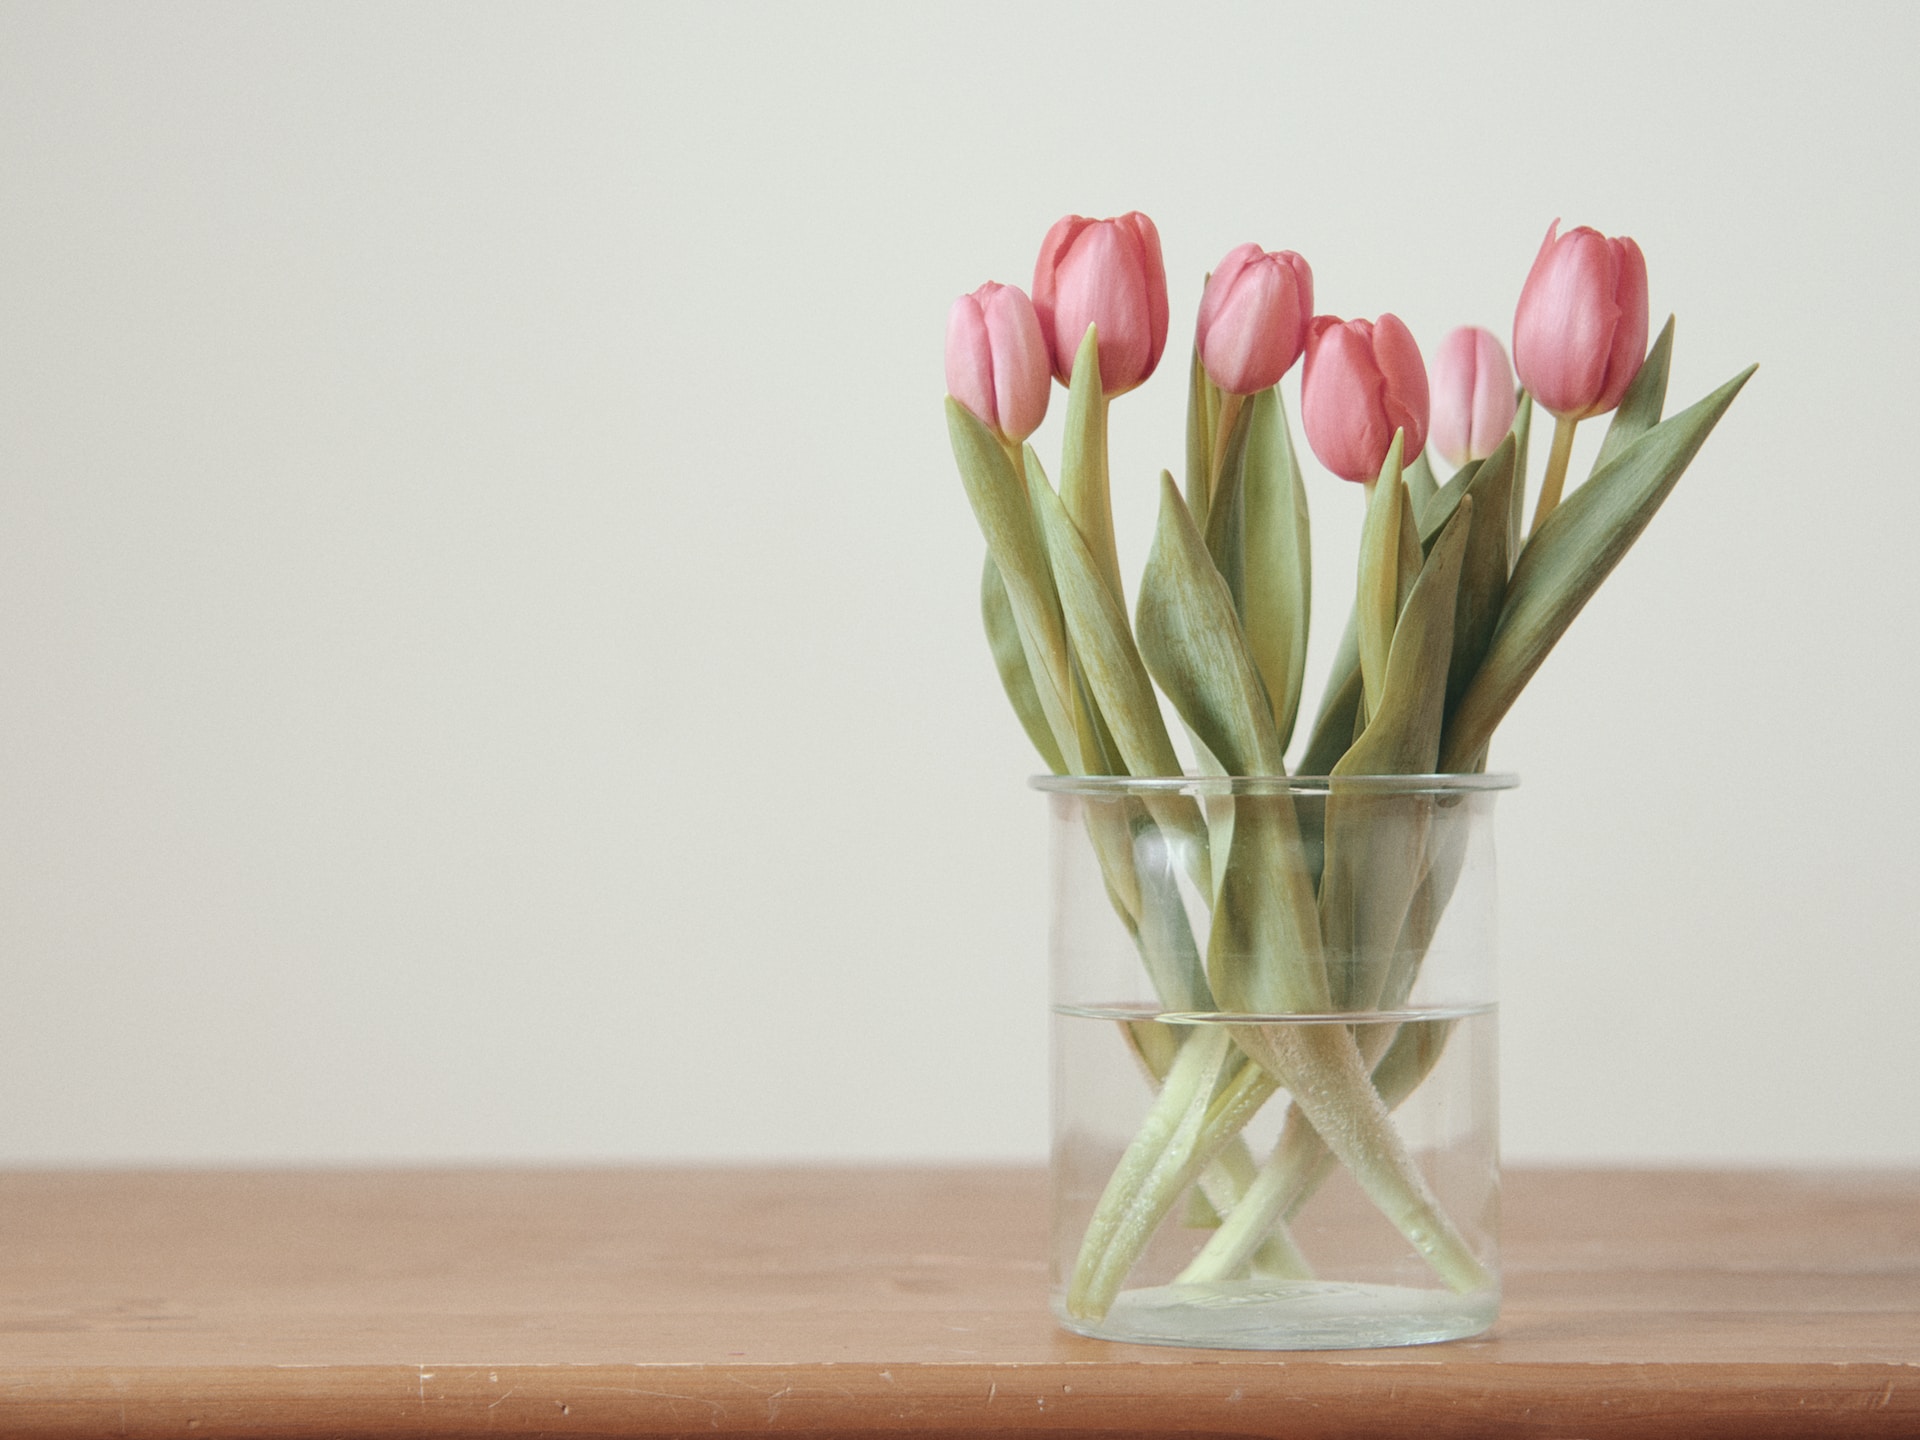 Consjeos para regalar tulipanes en un día especial